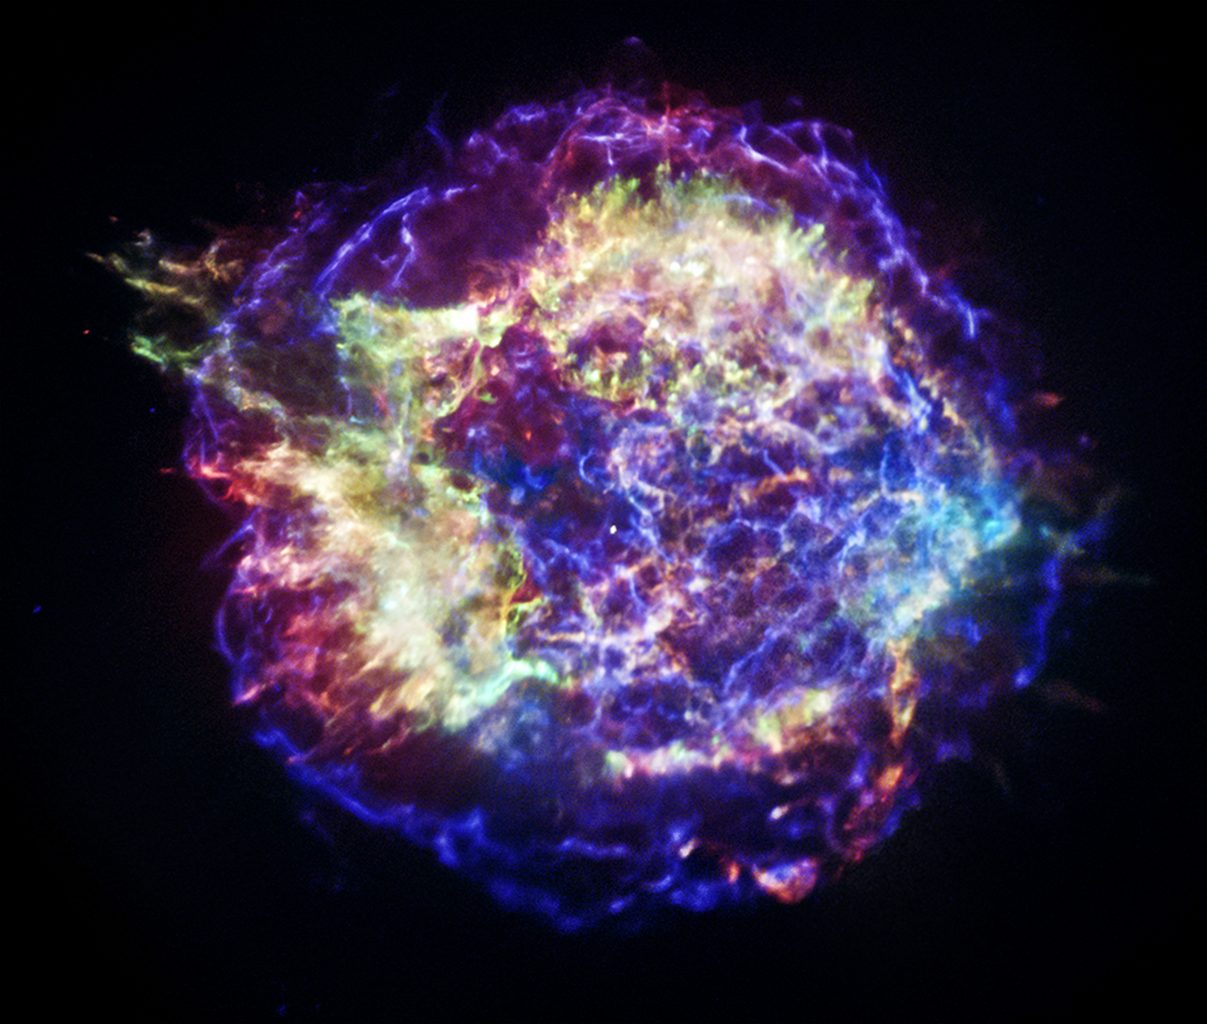 Составное изображение Кассиопеи А 2005 года, сделанное на основе объединенных данных Чандры, Хаббла и Спитцера. Фото: NASA/JPL-Caltech